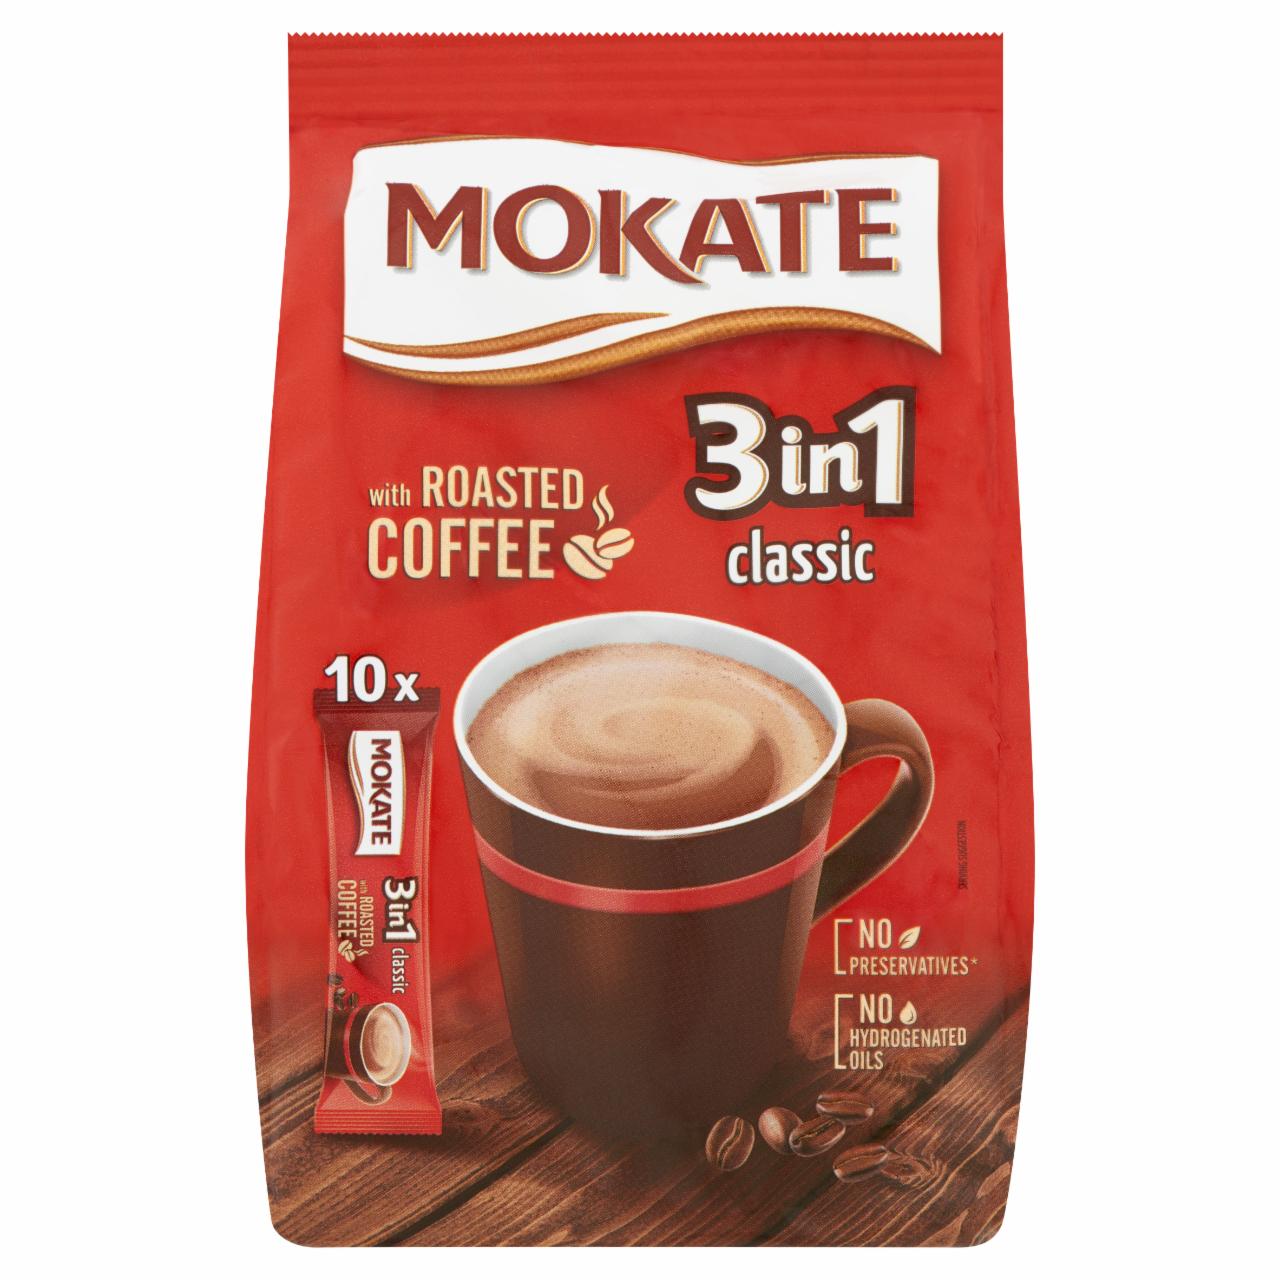 Képek - Mokate 3in1 Classic azonnal oldódó kávéspecialitás 10 db 170 g